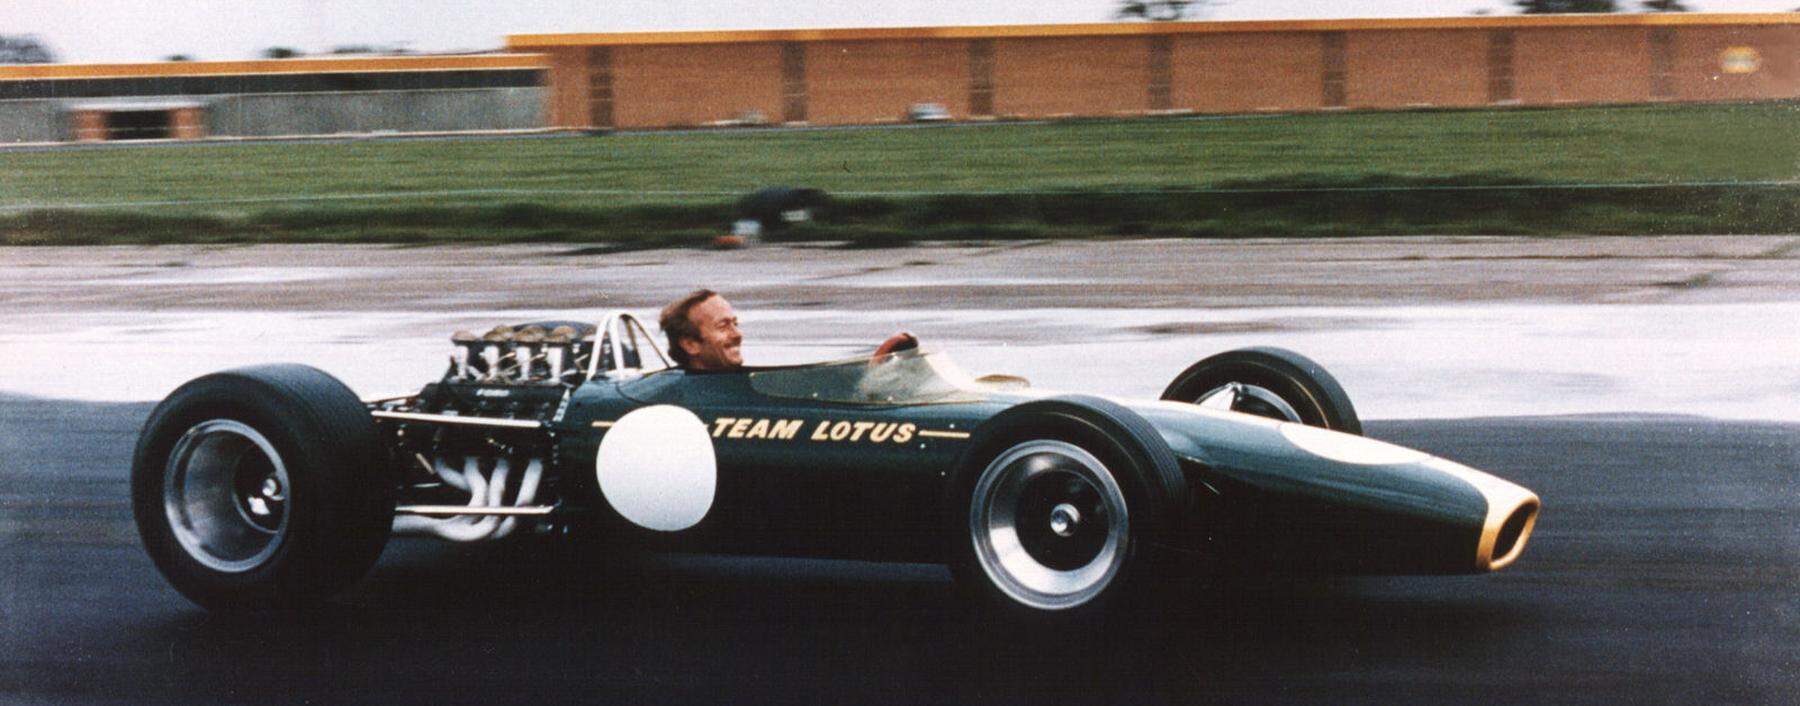 Da freut sich der Chef: Lotus-Gründer Colin Chapman auf Spritztour im noch unfertigen, später sehr erfolgreichen Type 49 auf dem Firmengelände in Hethel.